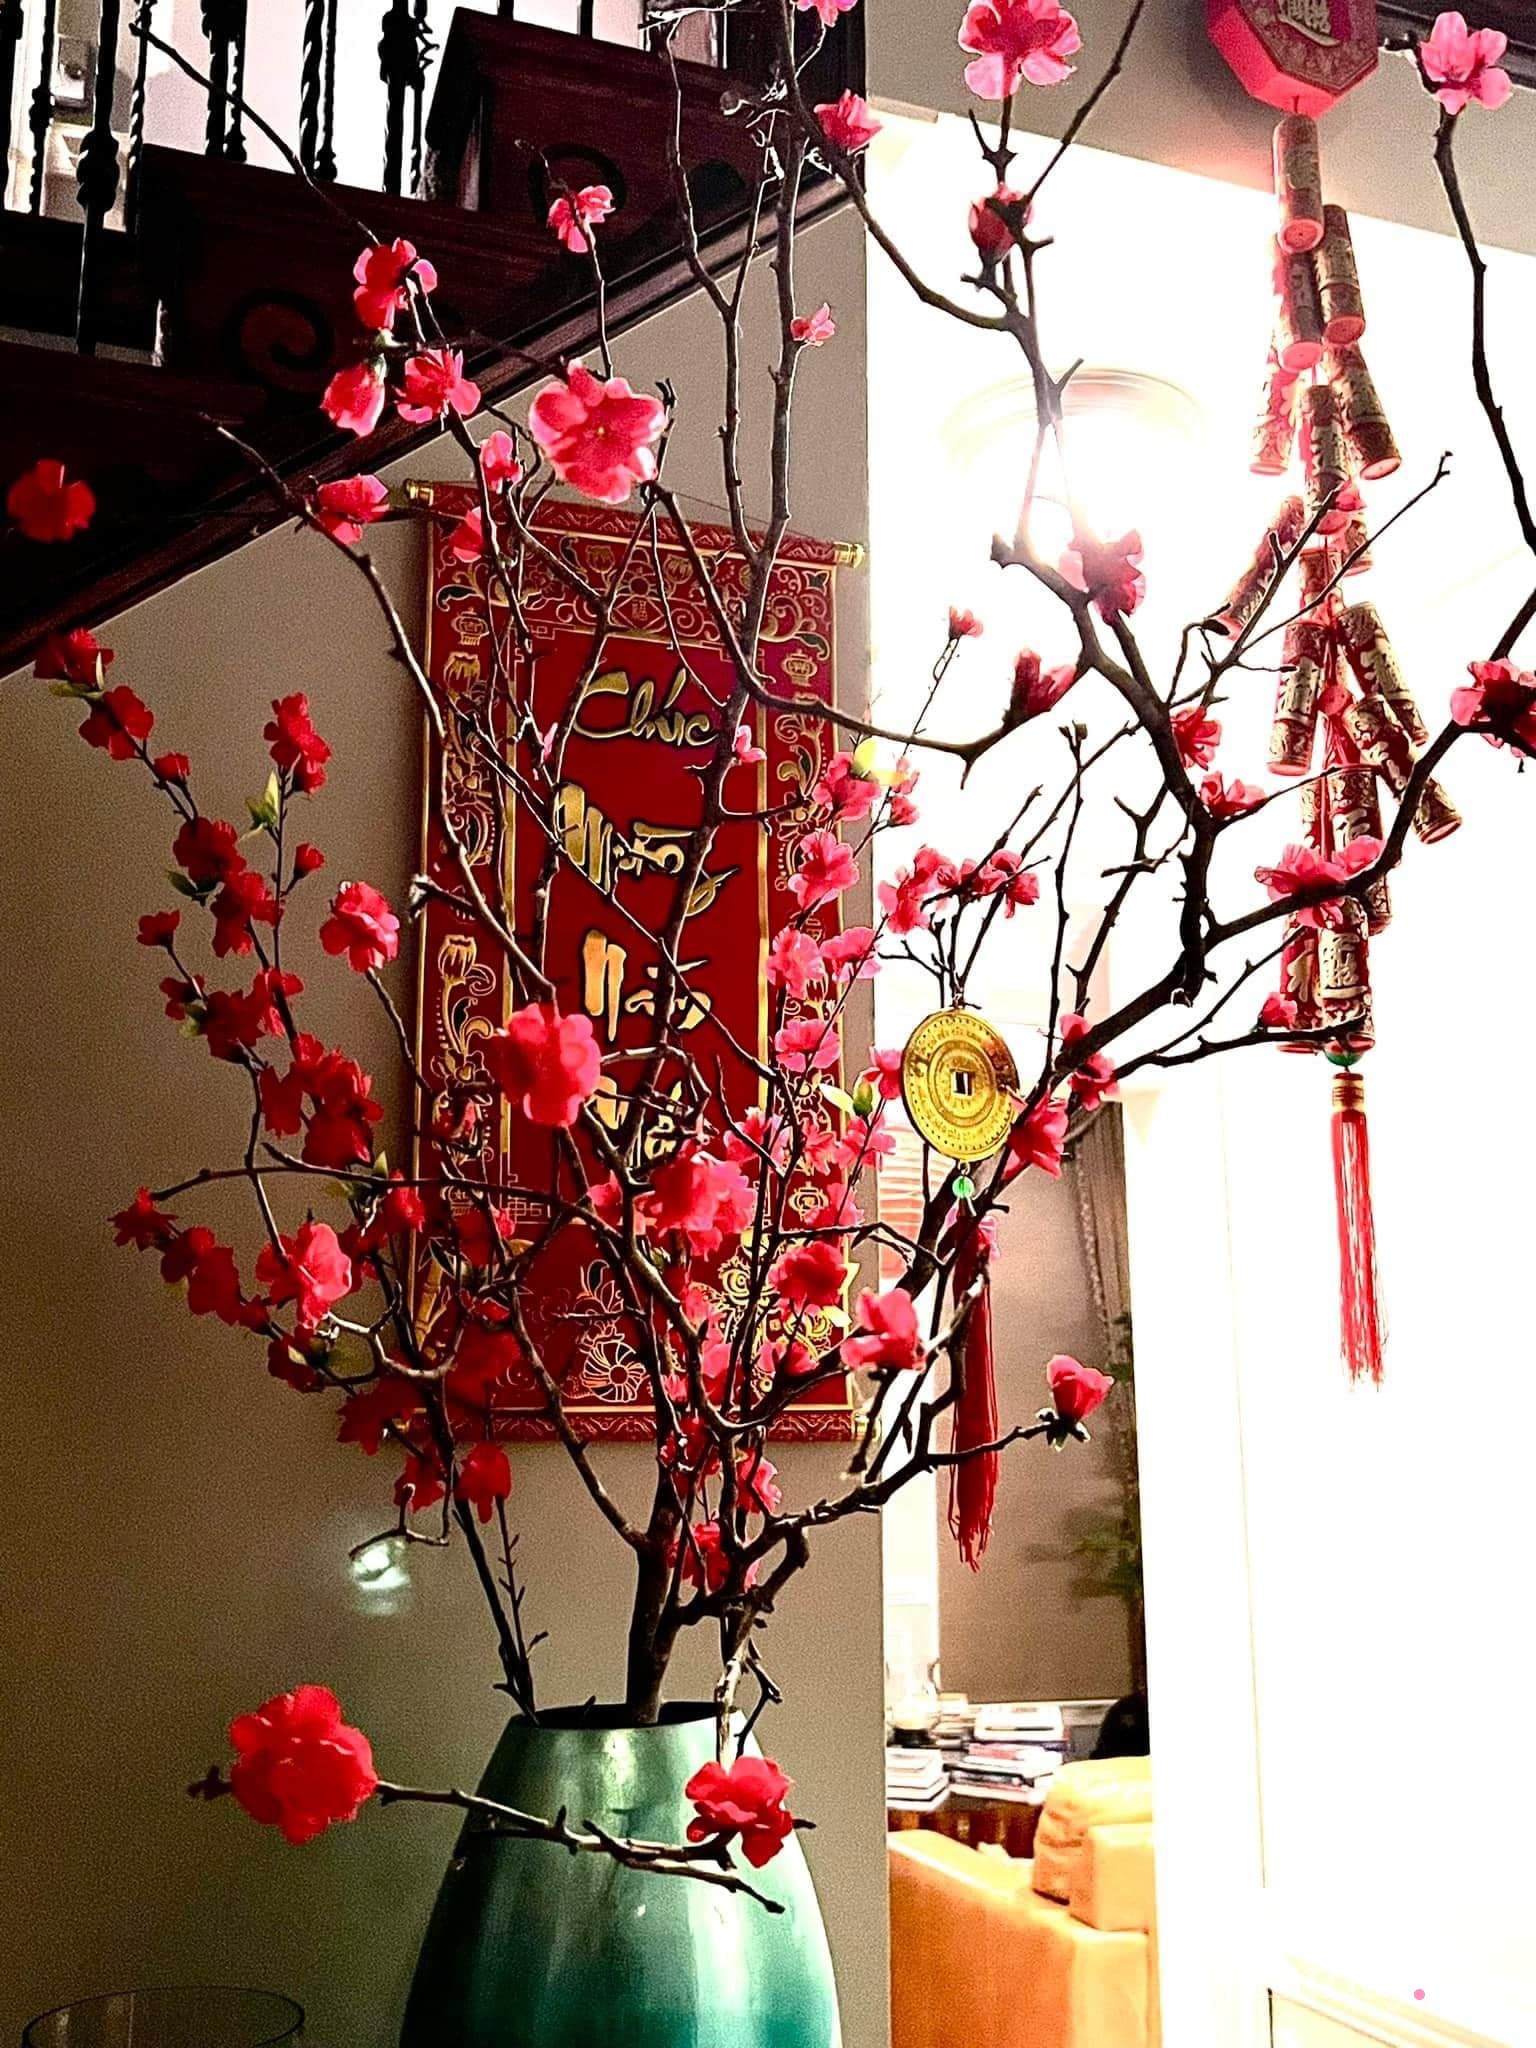 Mùng 1 Tết ghé nhà mẹ Việt trên đất Mỹ thăm thú: Trang hoàng đón năm mới ở xứ người tràn ngập hương vị Xuân - Ảnh 4.